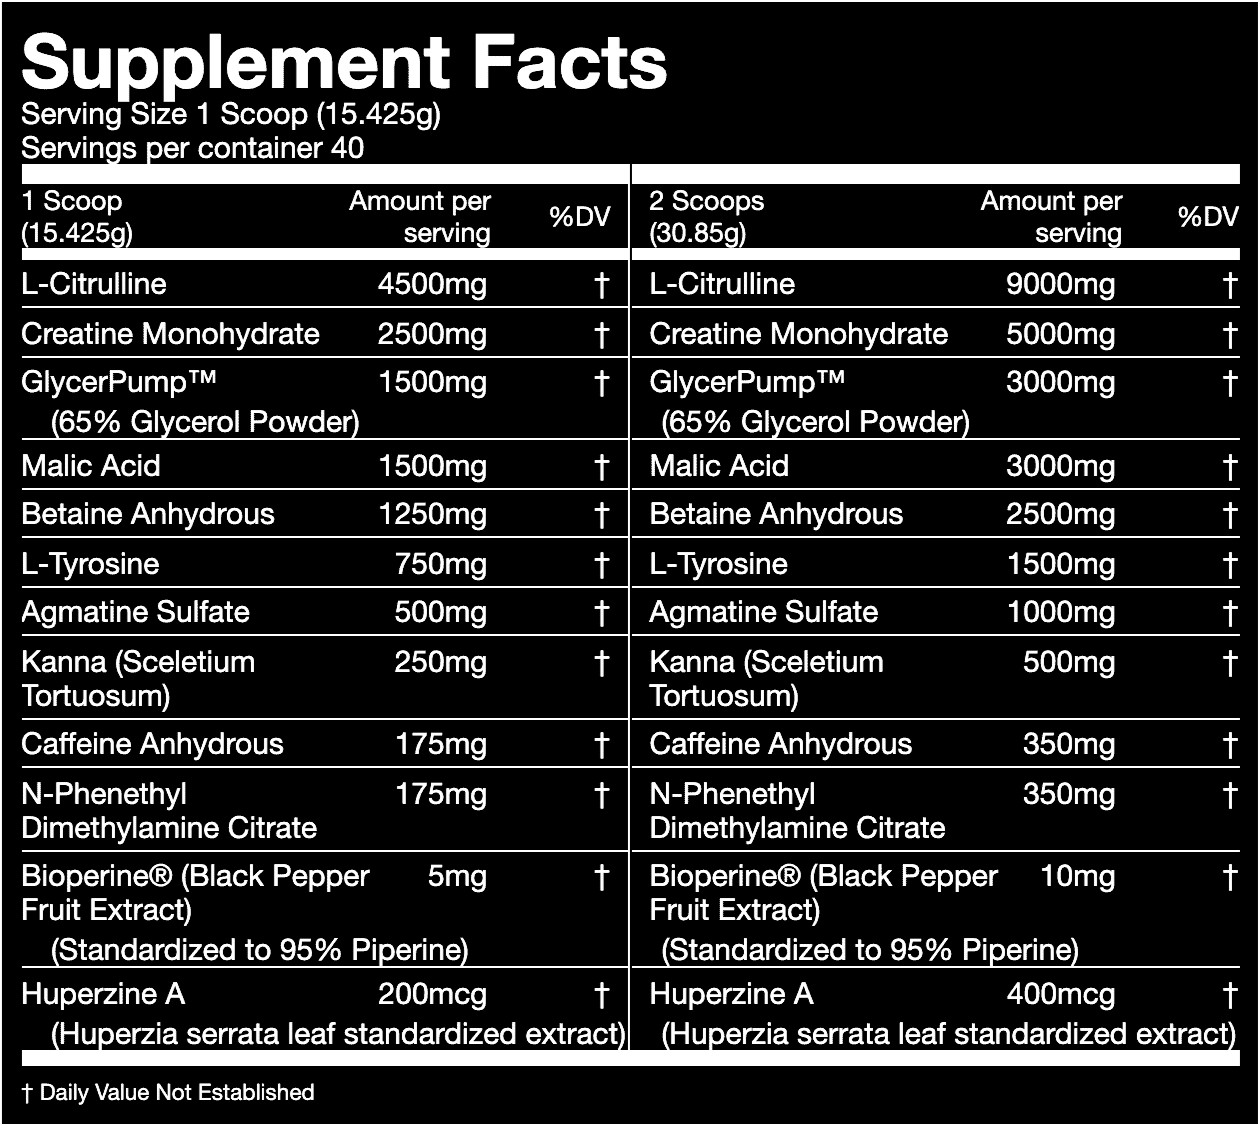 Supplement fact sheet for Gorilla Mode pre-workout